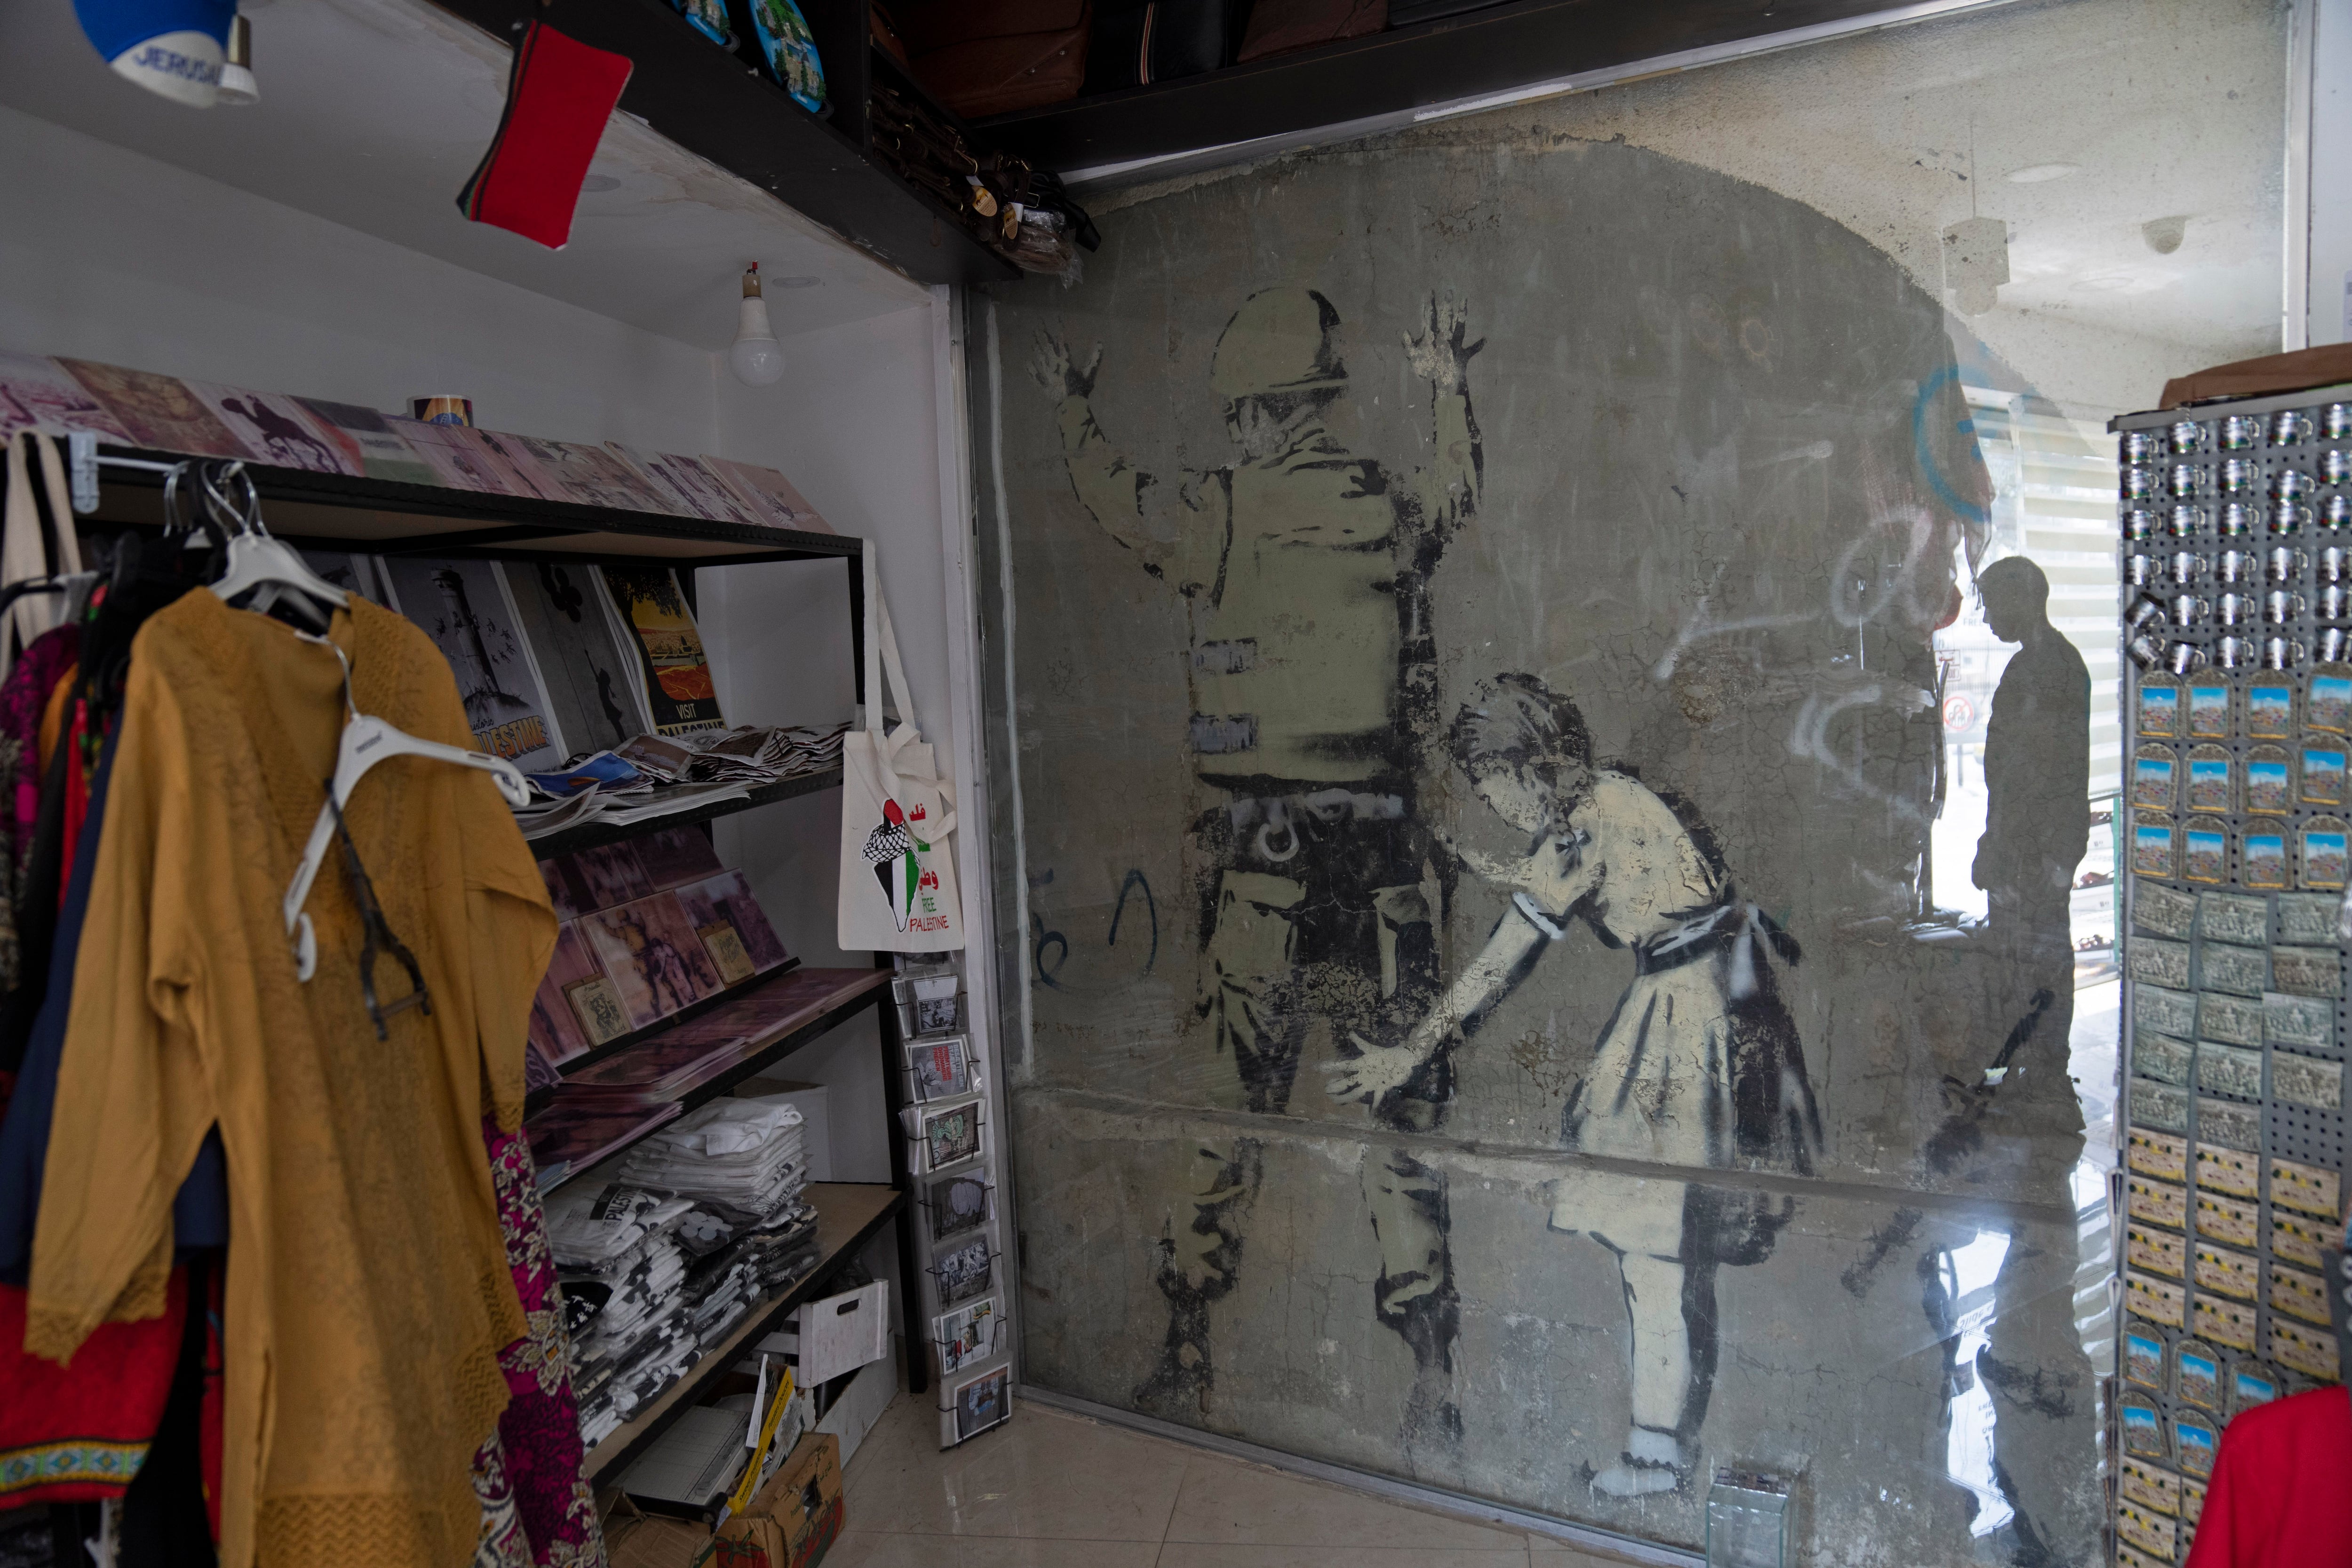 Banksy painting sprayed in West Bank resurfaces in Tel Aviv